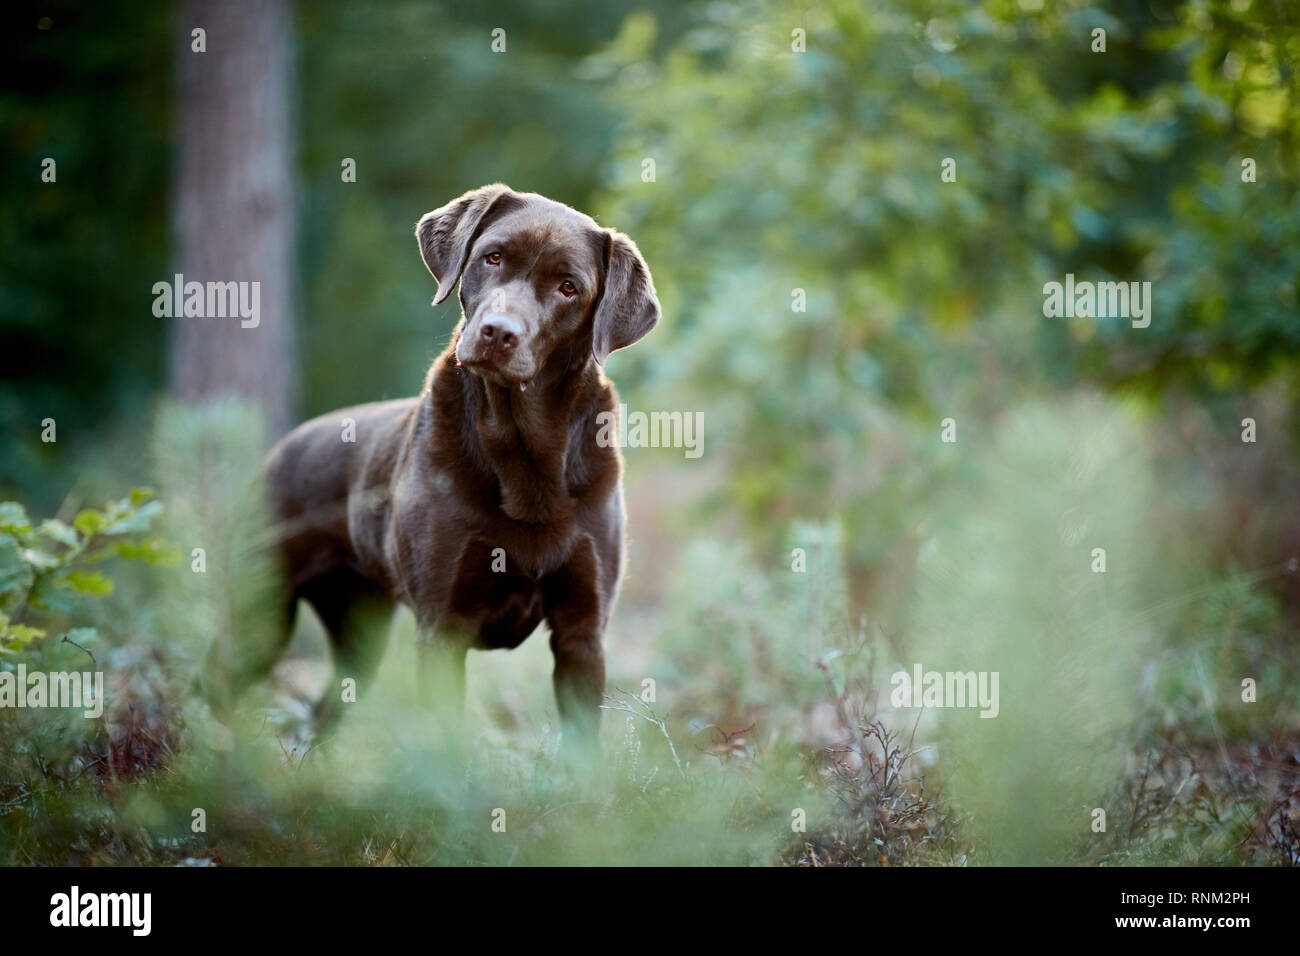 Labrador Retriever. Adultes chocolat debout dans une forêt. Allemagne Banque D'Images